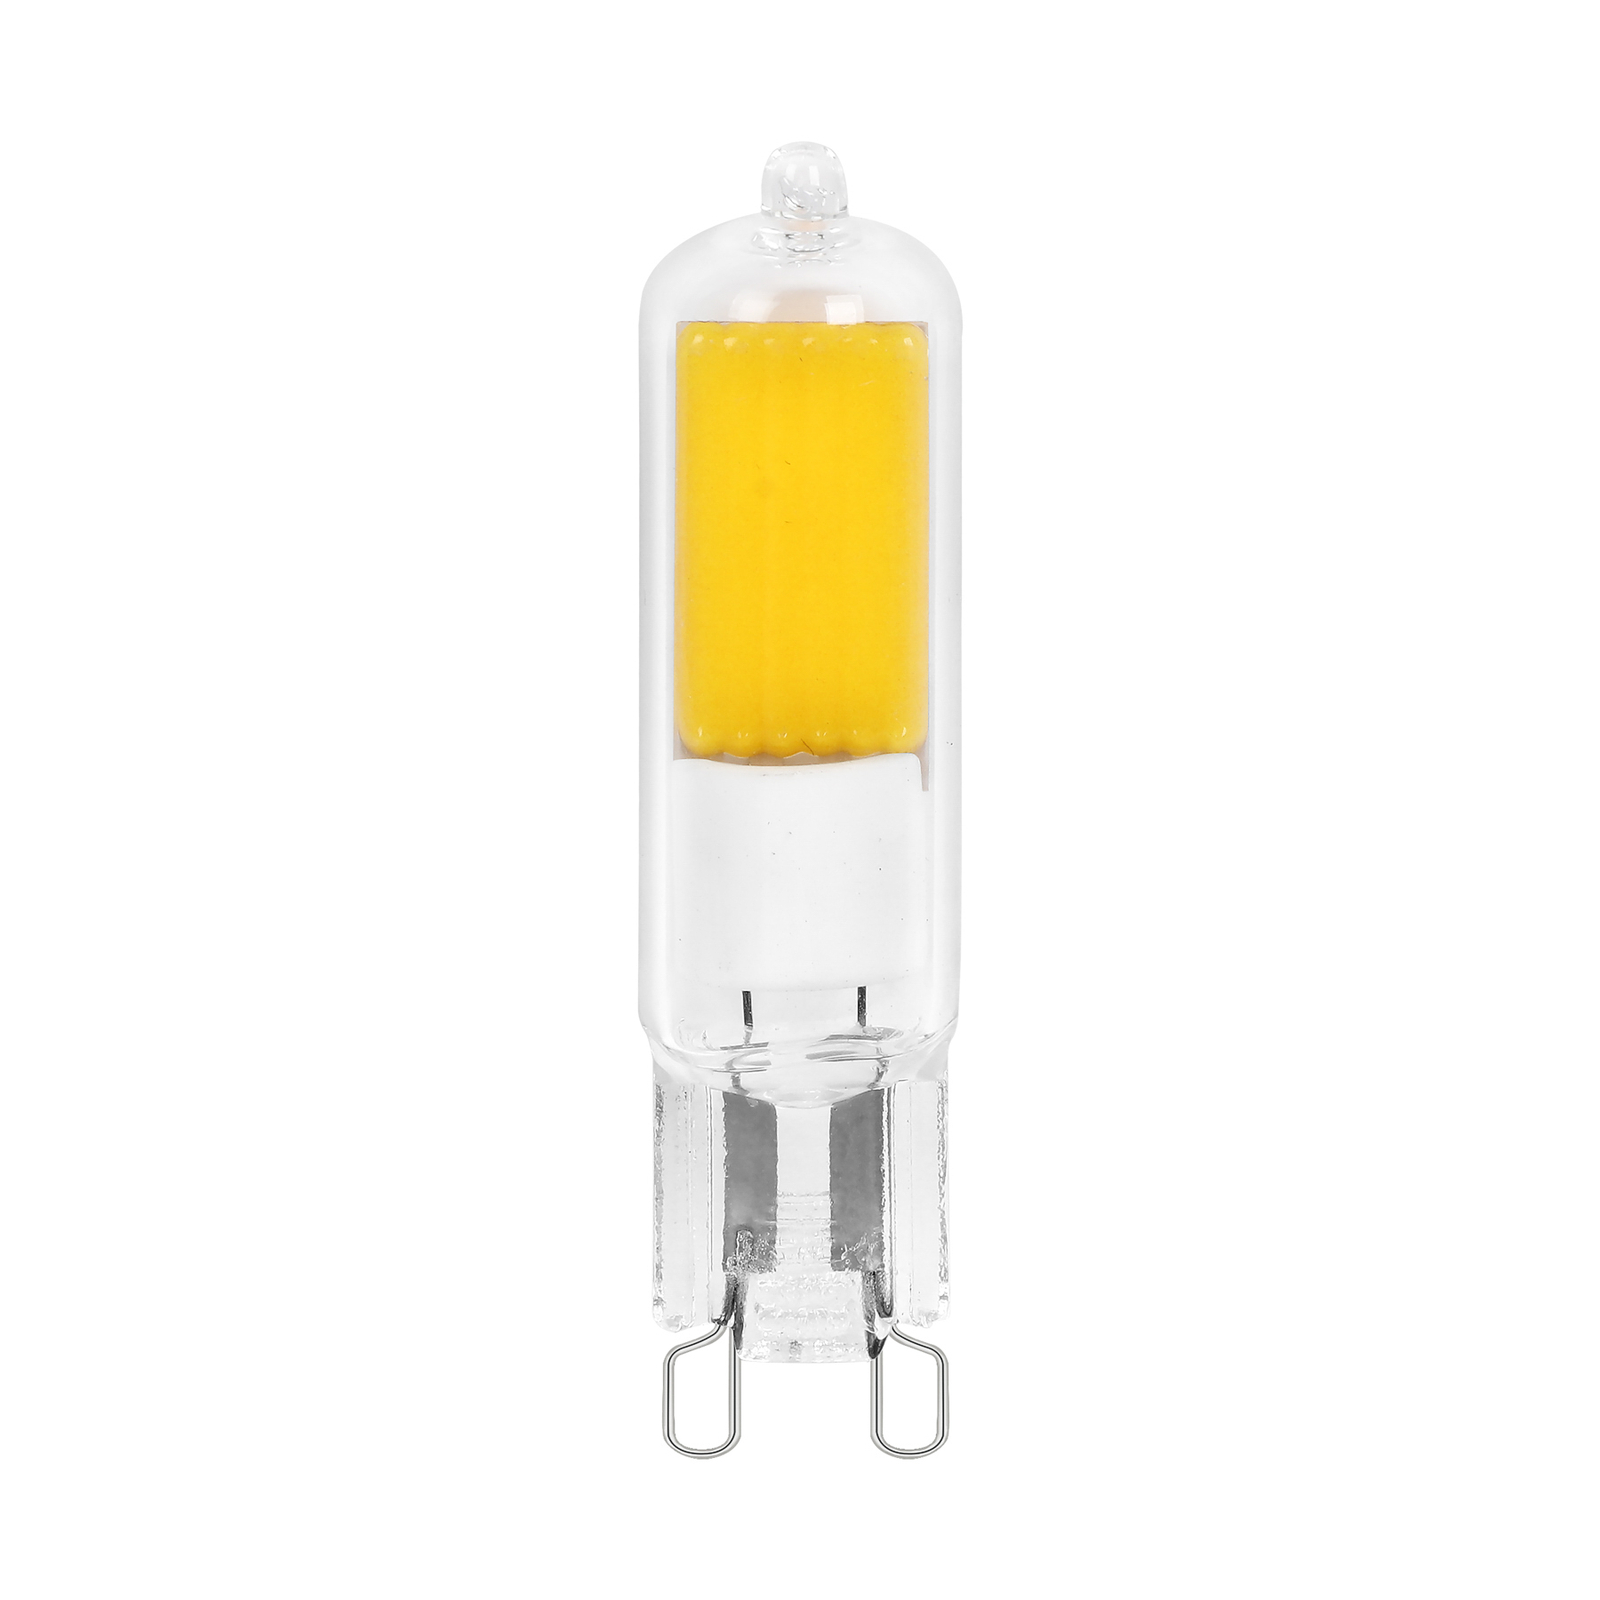 Arcchio bi-pin LED bulb, G9, 2.2W, 3000K, set of 3